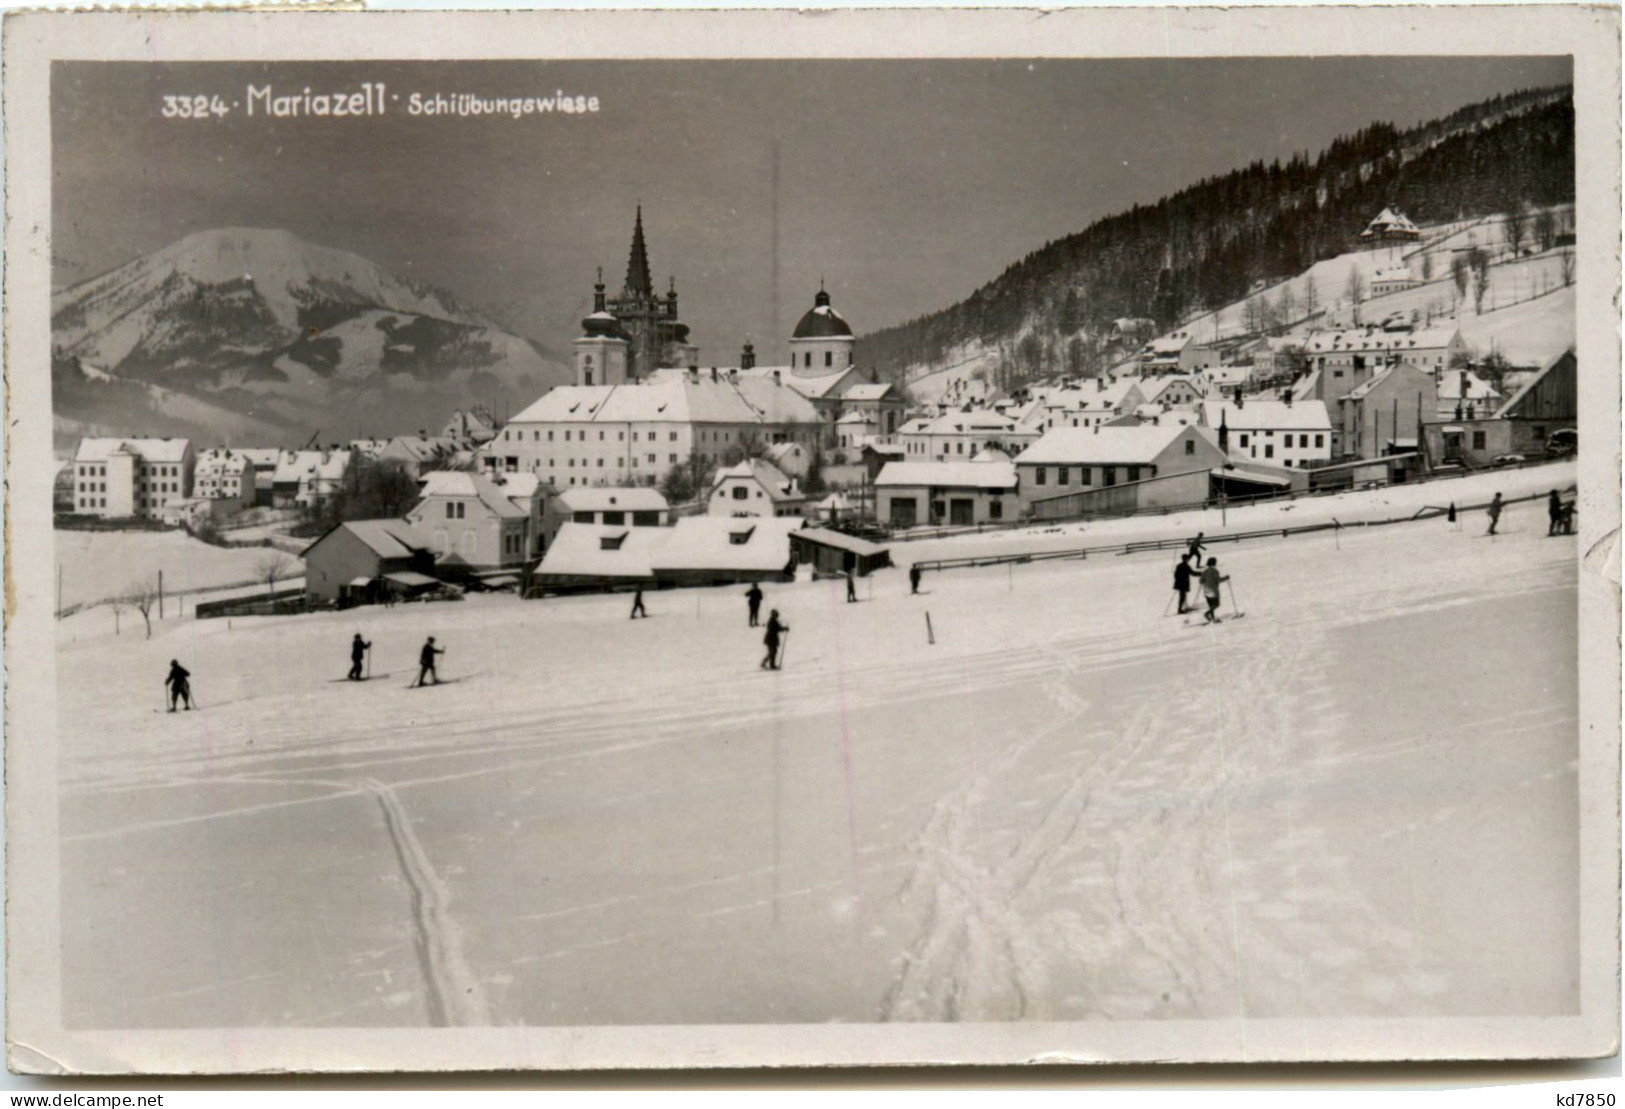 Mariazell, Skiübungswiese - Mariazell